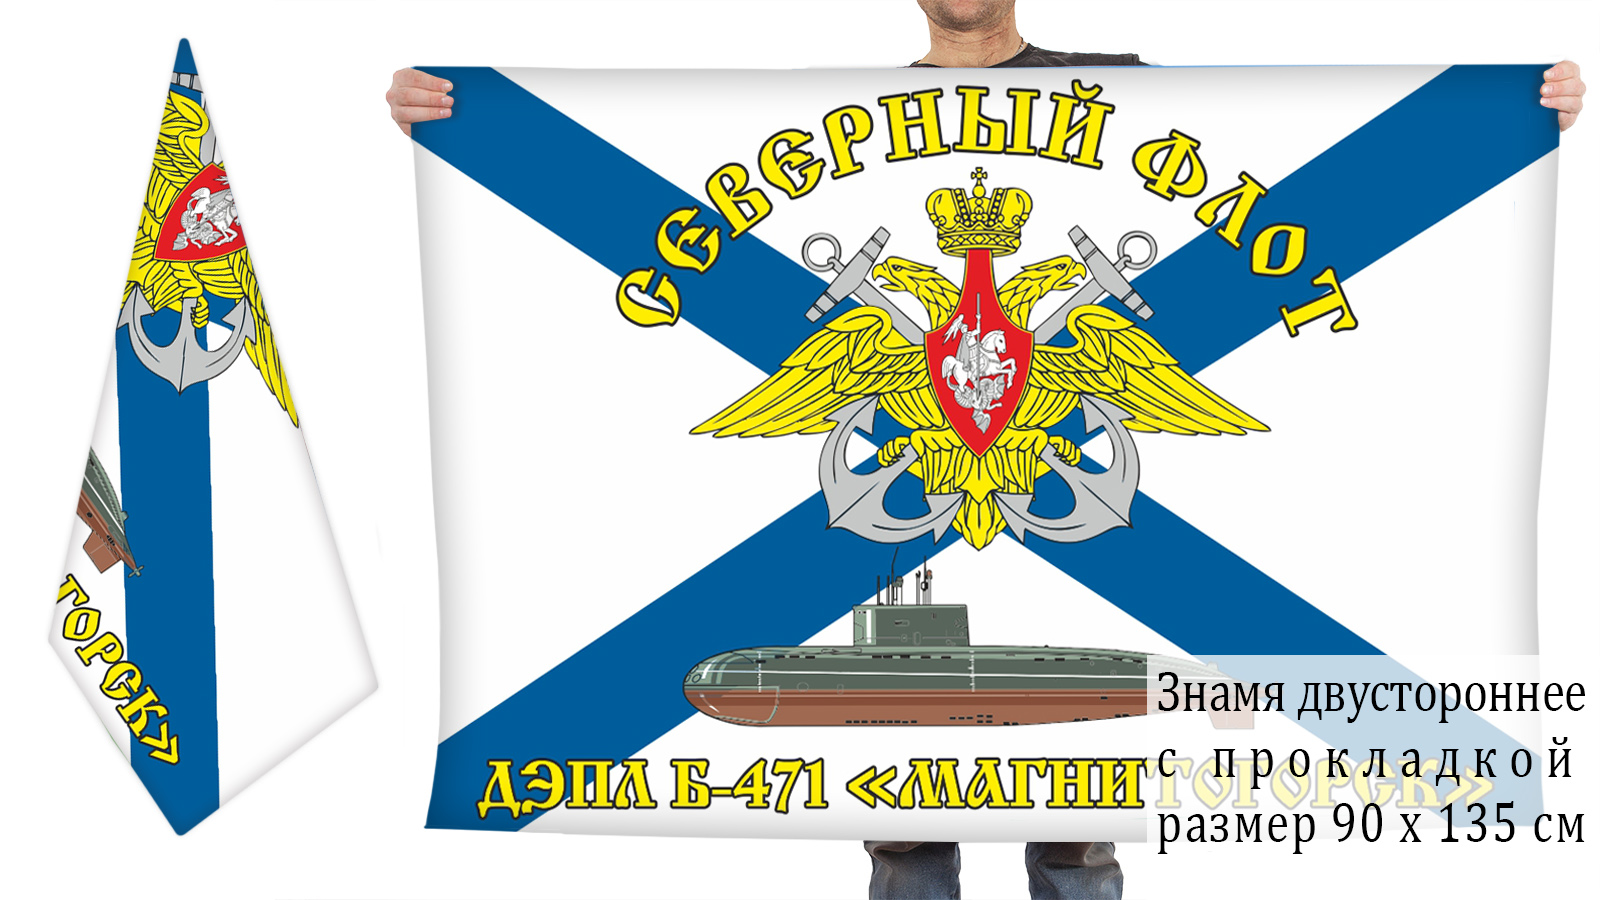 Купить флаг ВМФ Б-471 «Магнитогорск»